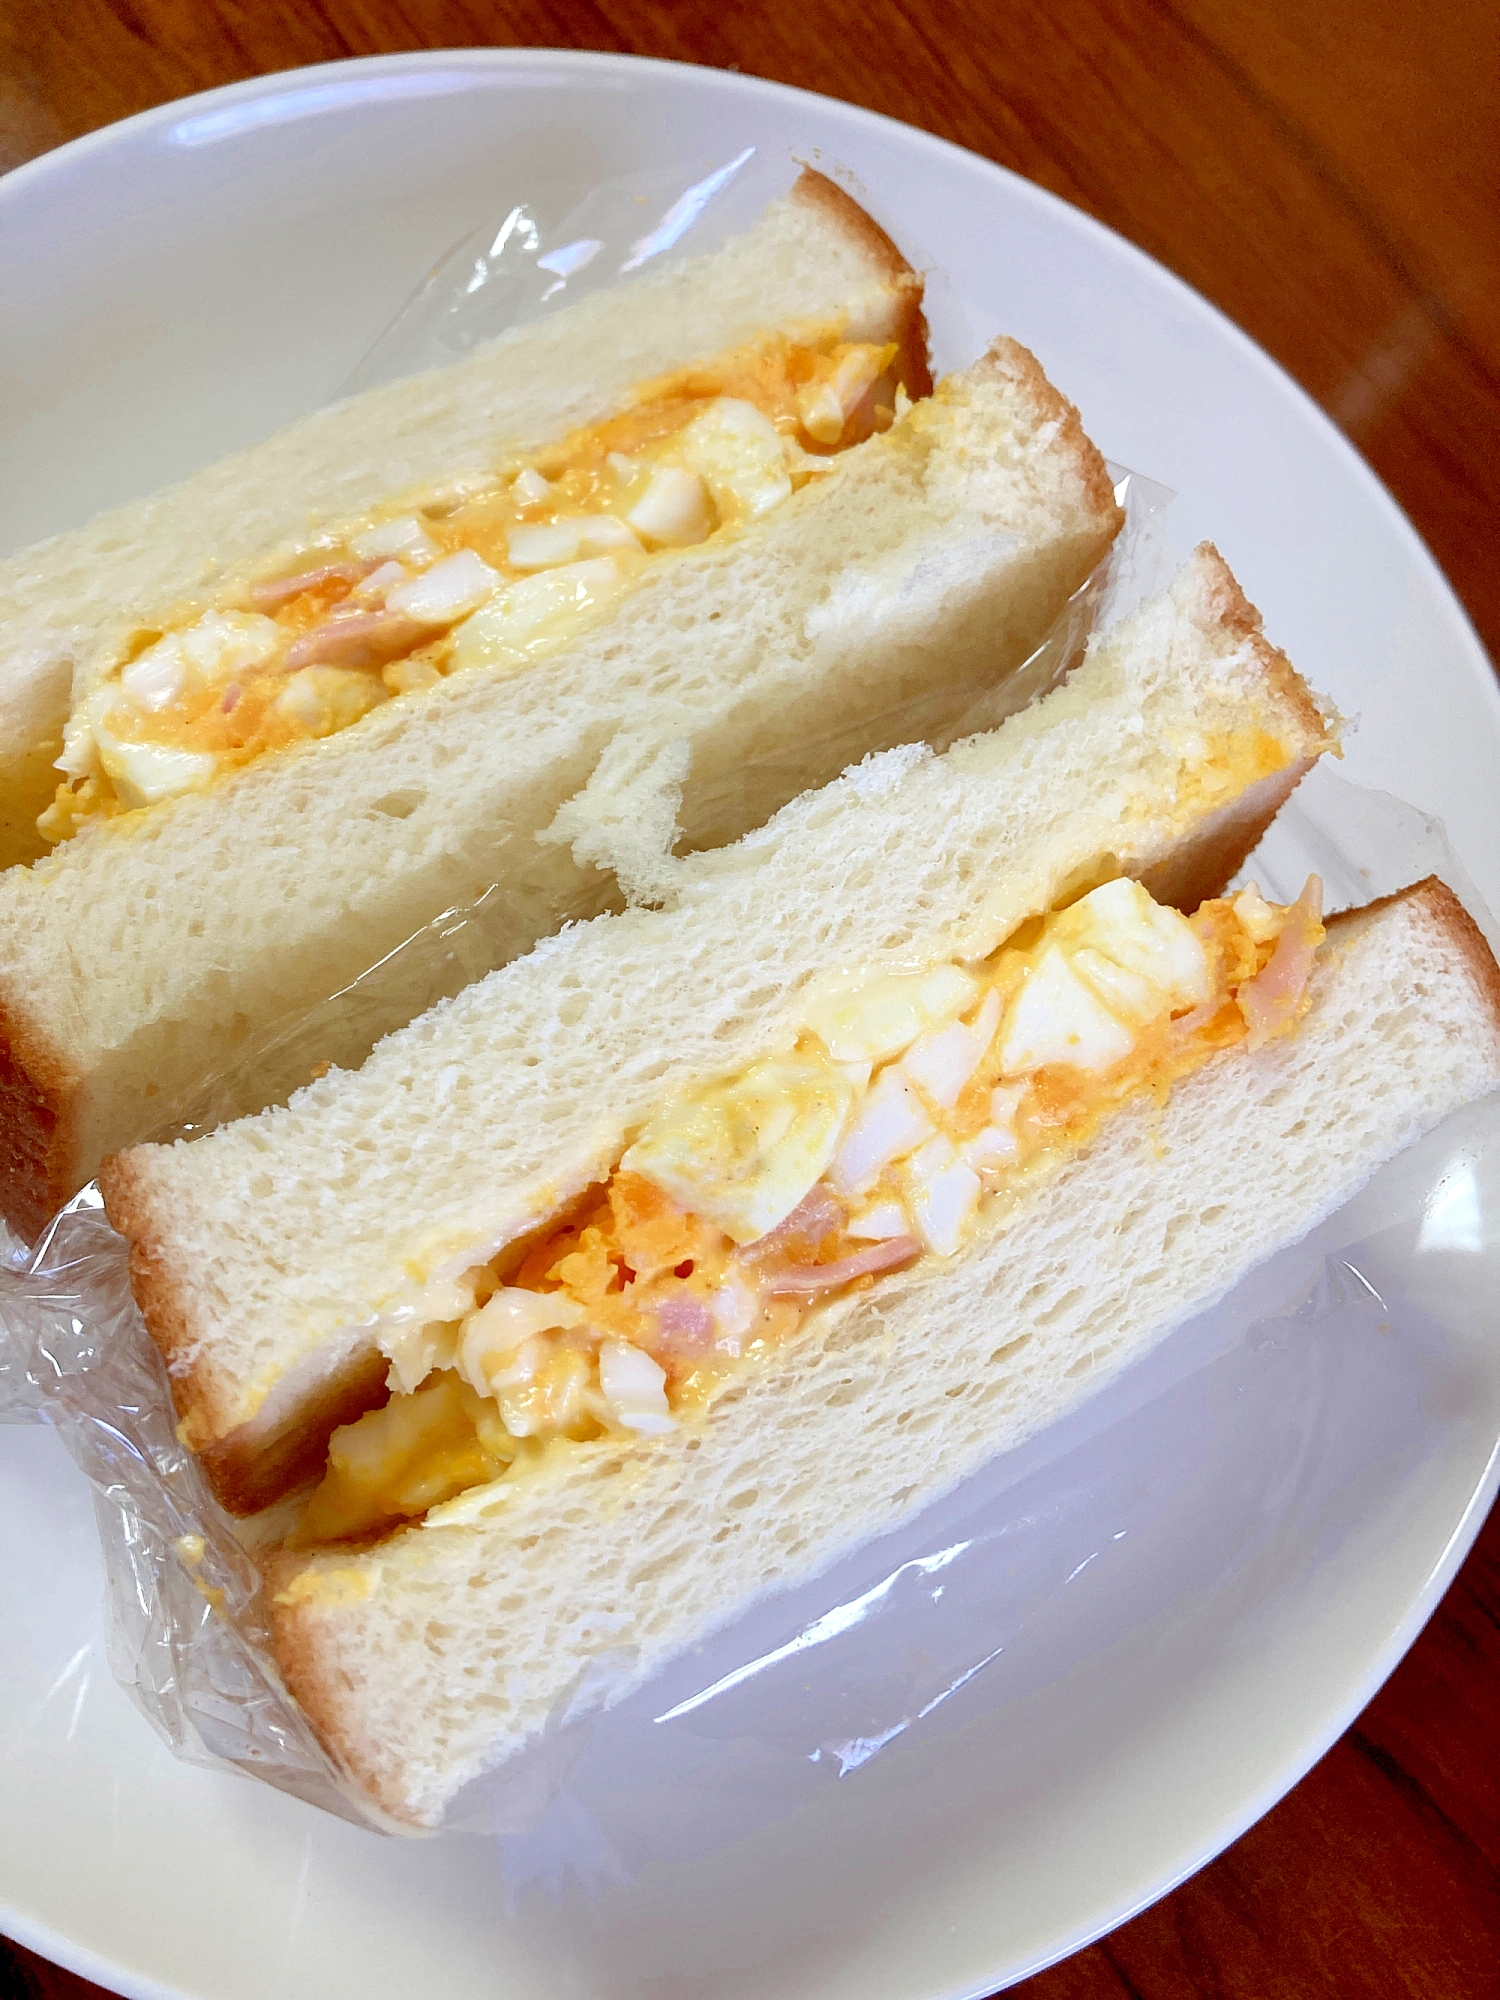 ゆで卵とハムのサンドイッチ